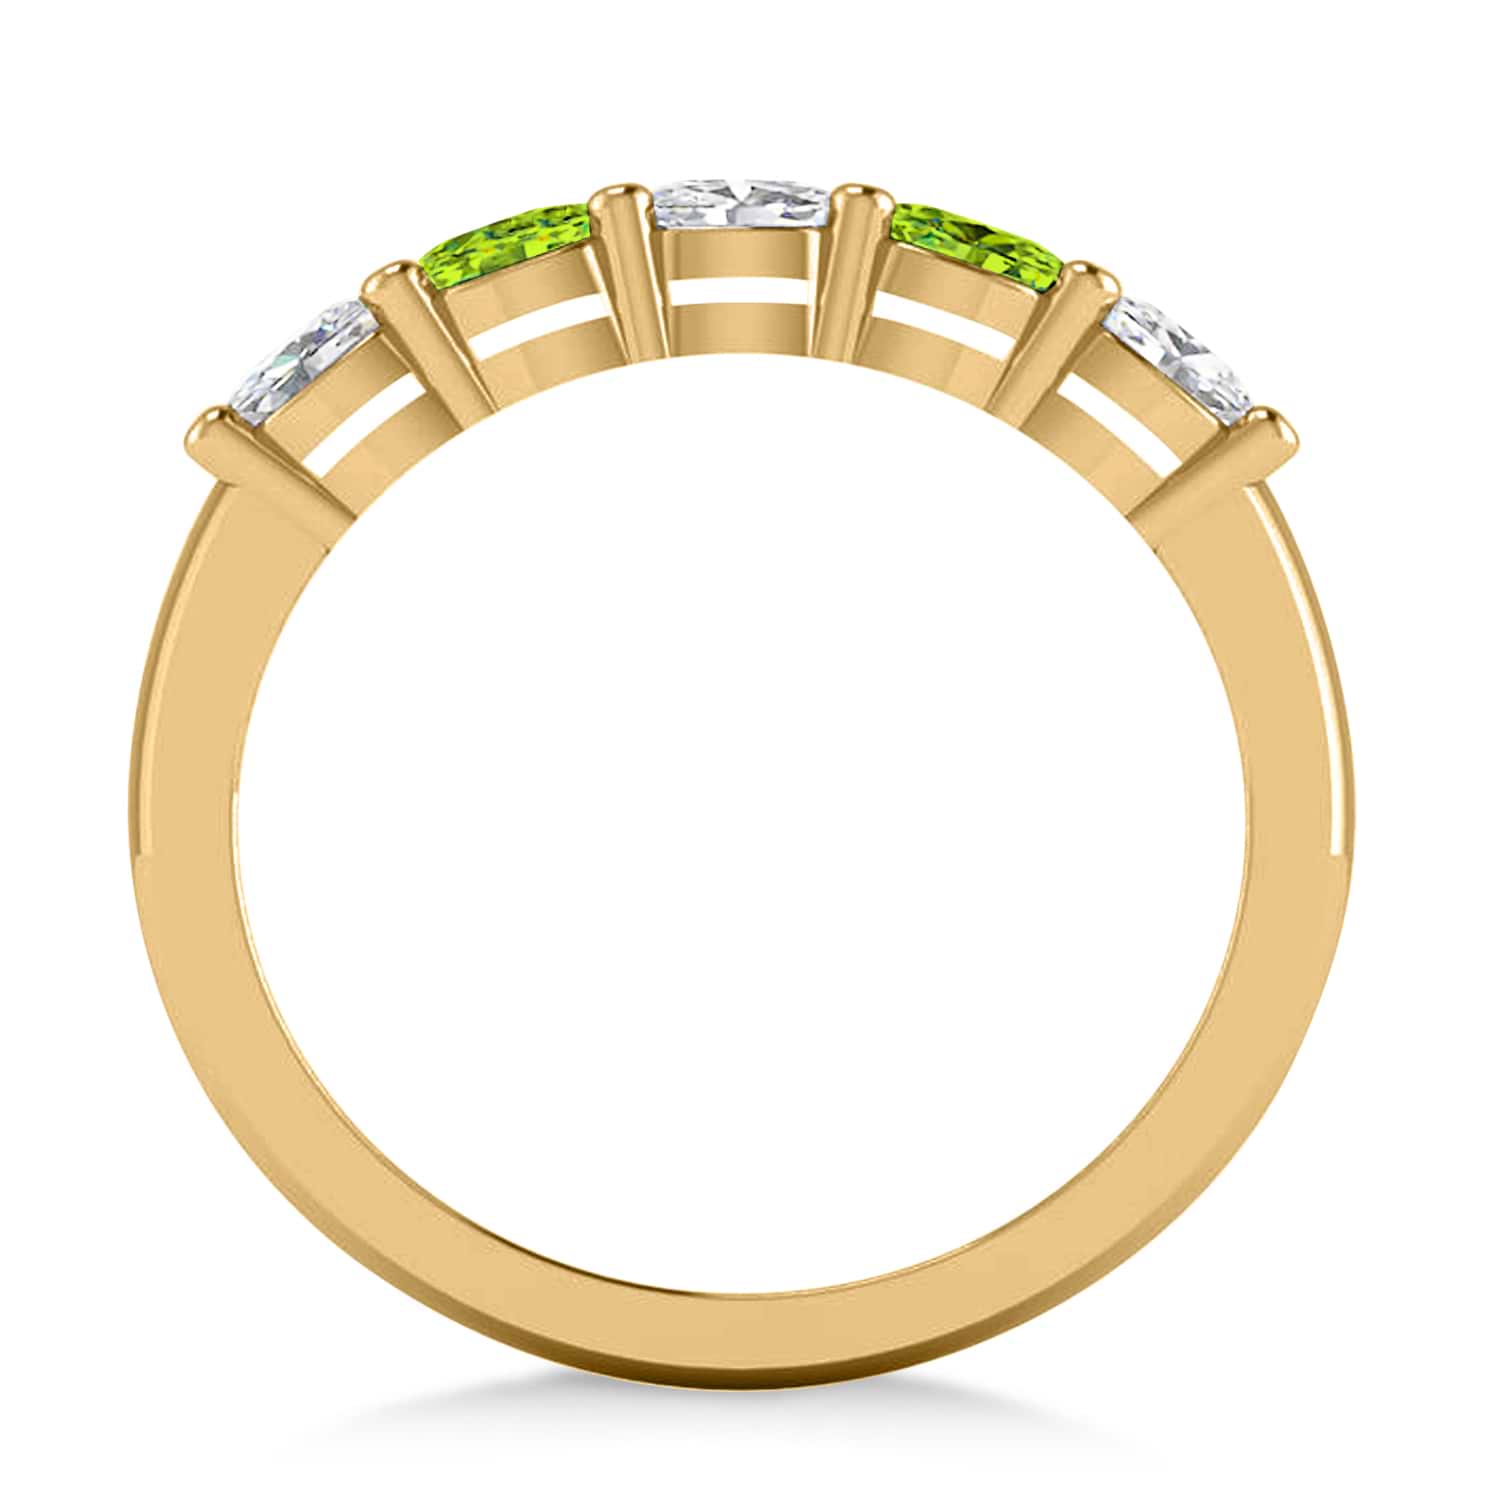 Oval Diamond & Peridot Five Stone Ring 14k Yellow Gold (1.00ct)